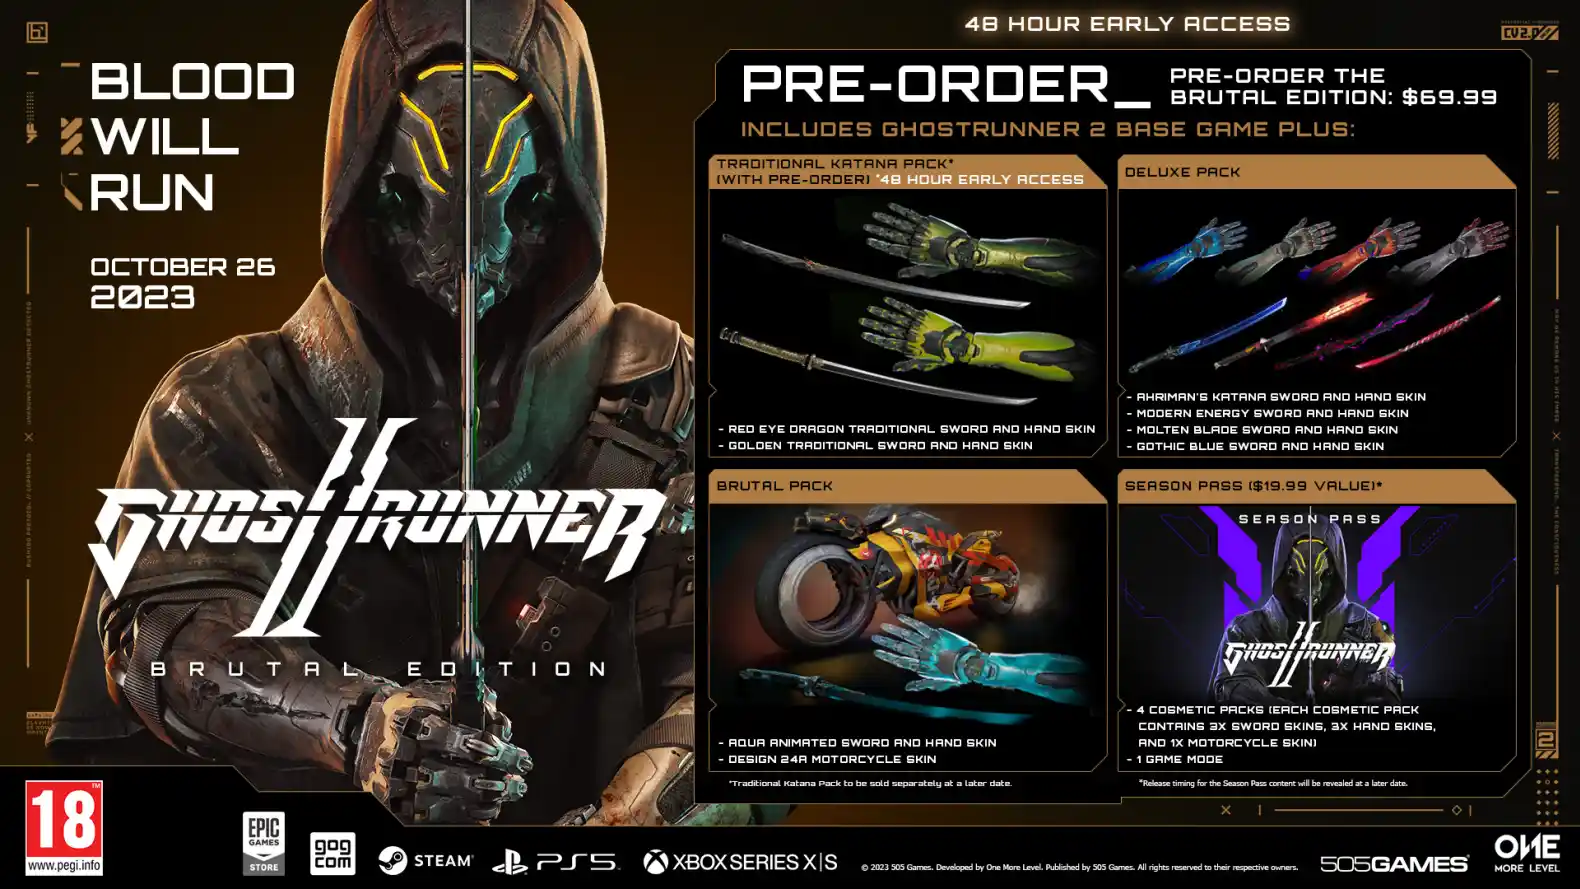 Ghostrunner 2 - rivelata la data di uscita e le edizioni Deluxe e Brutal: aperti i preorder